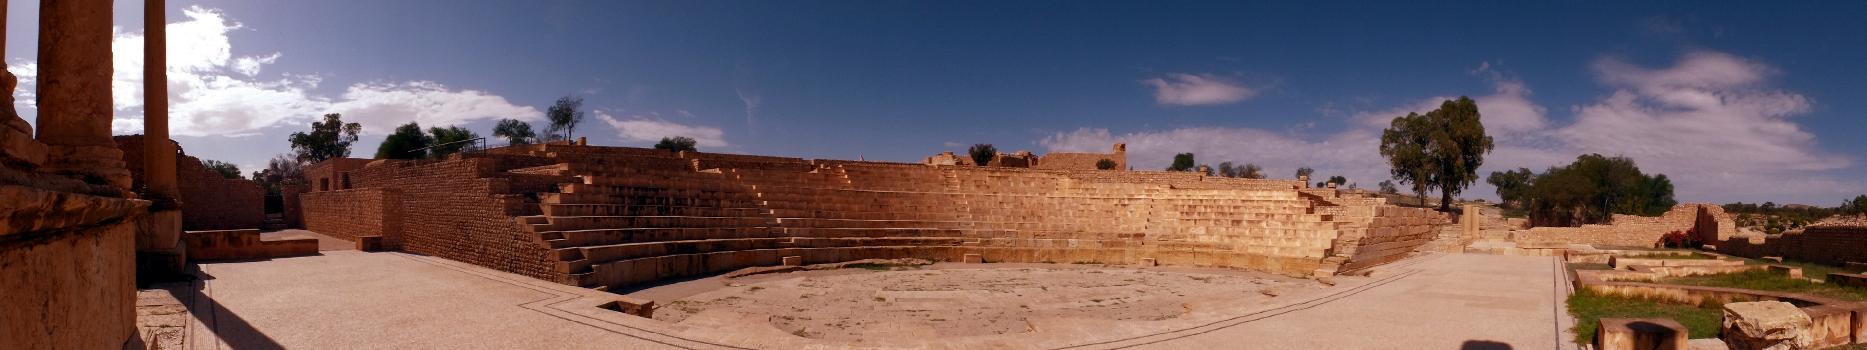 Ruines du théâtre, Sbeïtla